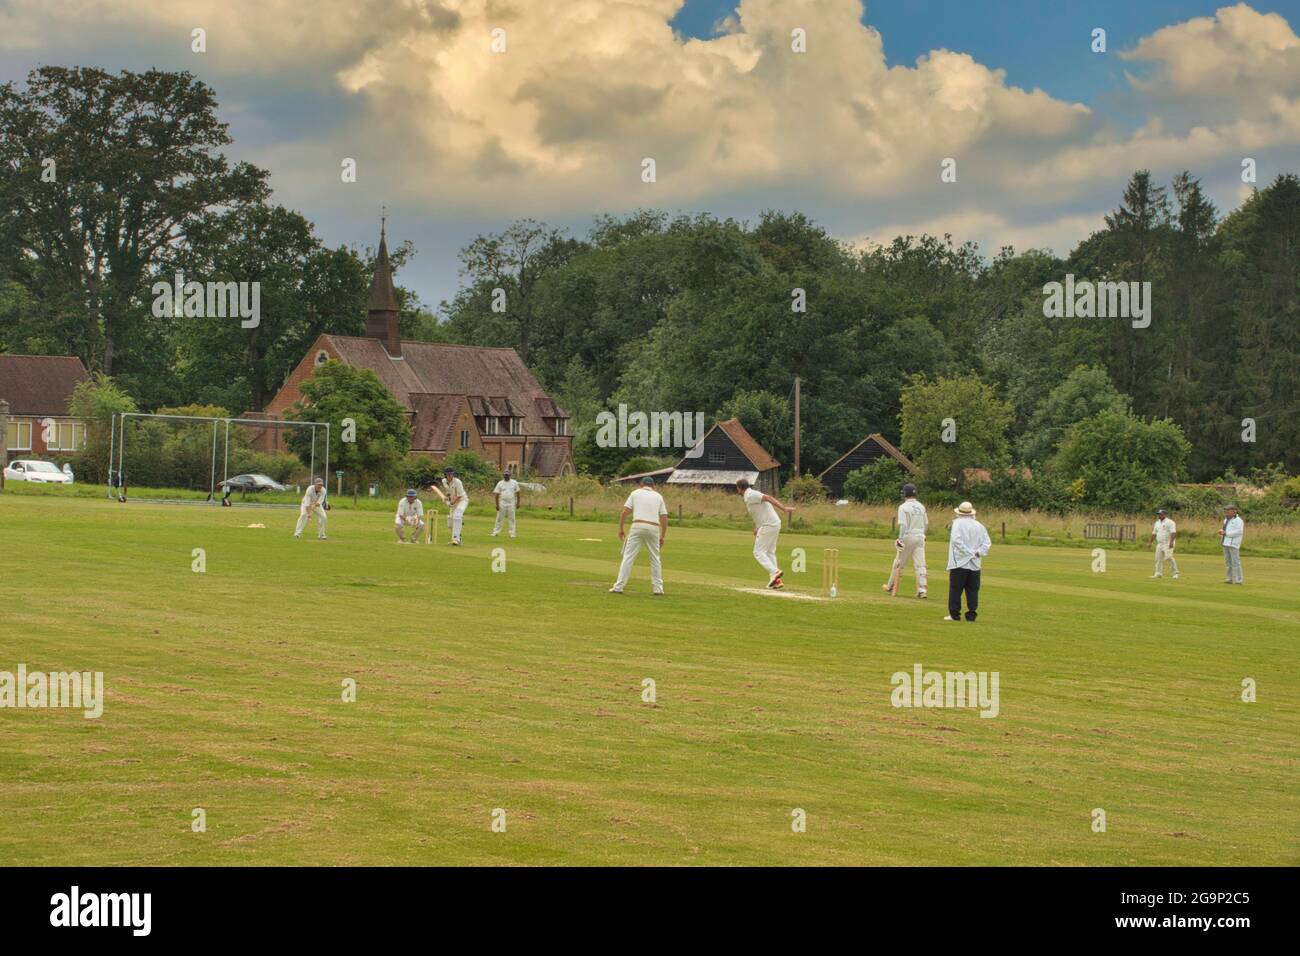 Un escenario tradicional de campo inglés de verano - cricket en un pueblo verde - aquí en Ockley, Surrey, Reino Unido Foto de stock